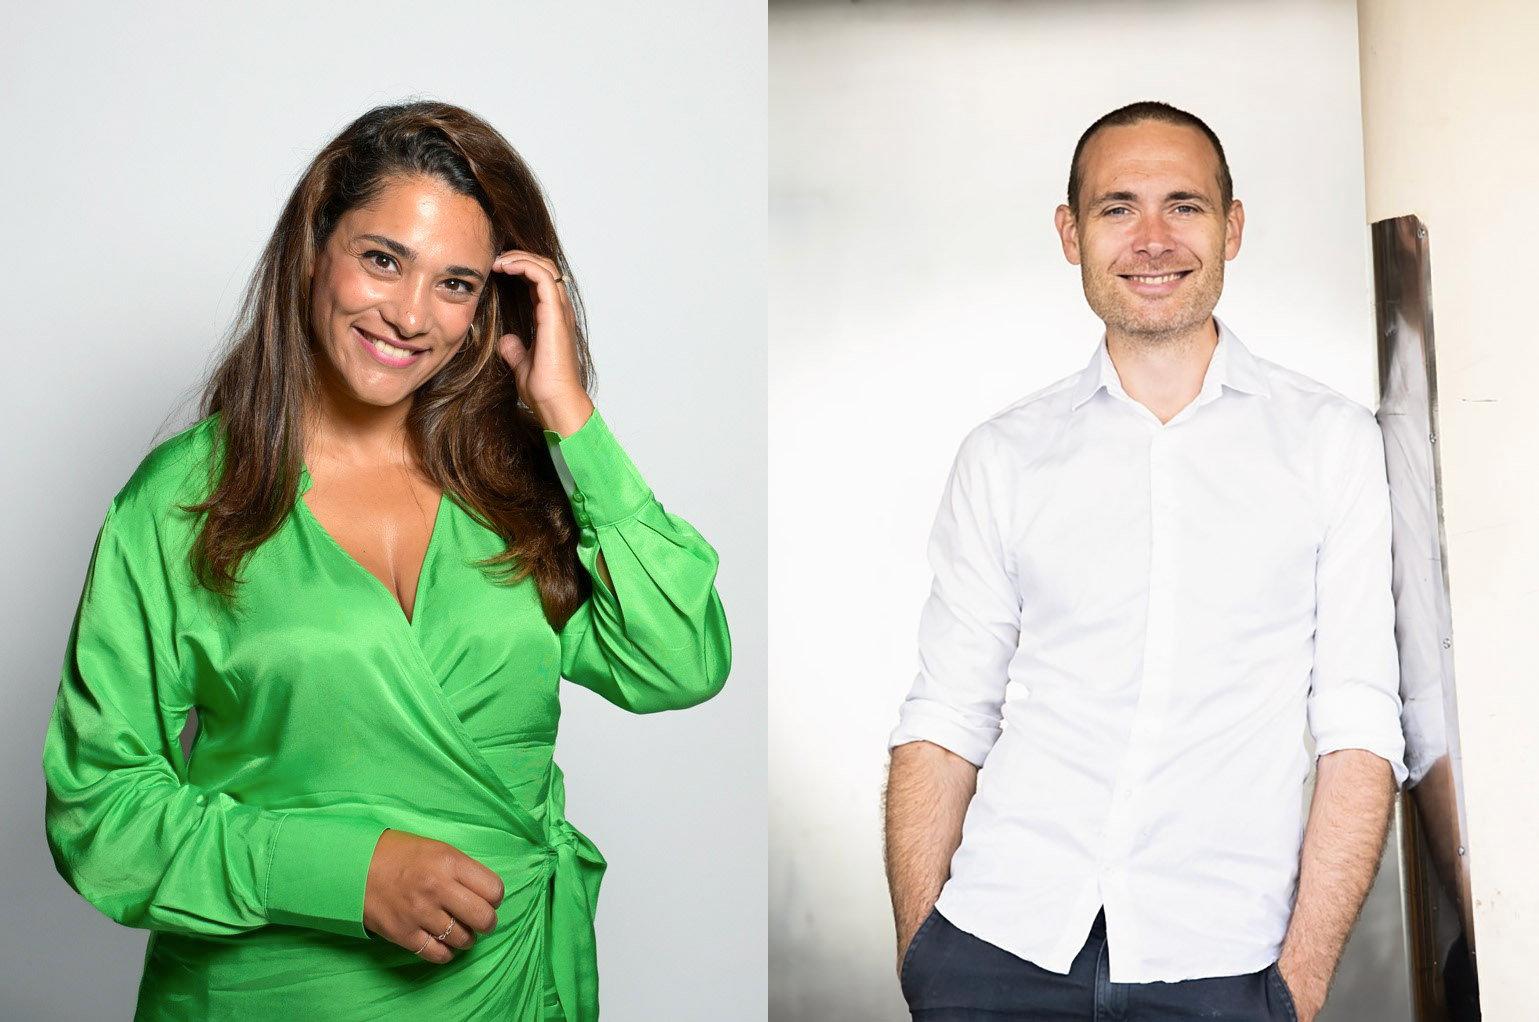 Farah Abadi och Jesper Rönndahl blir programledare för Melodifestivalen nästa år.